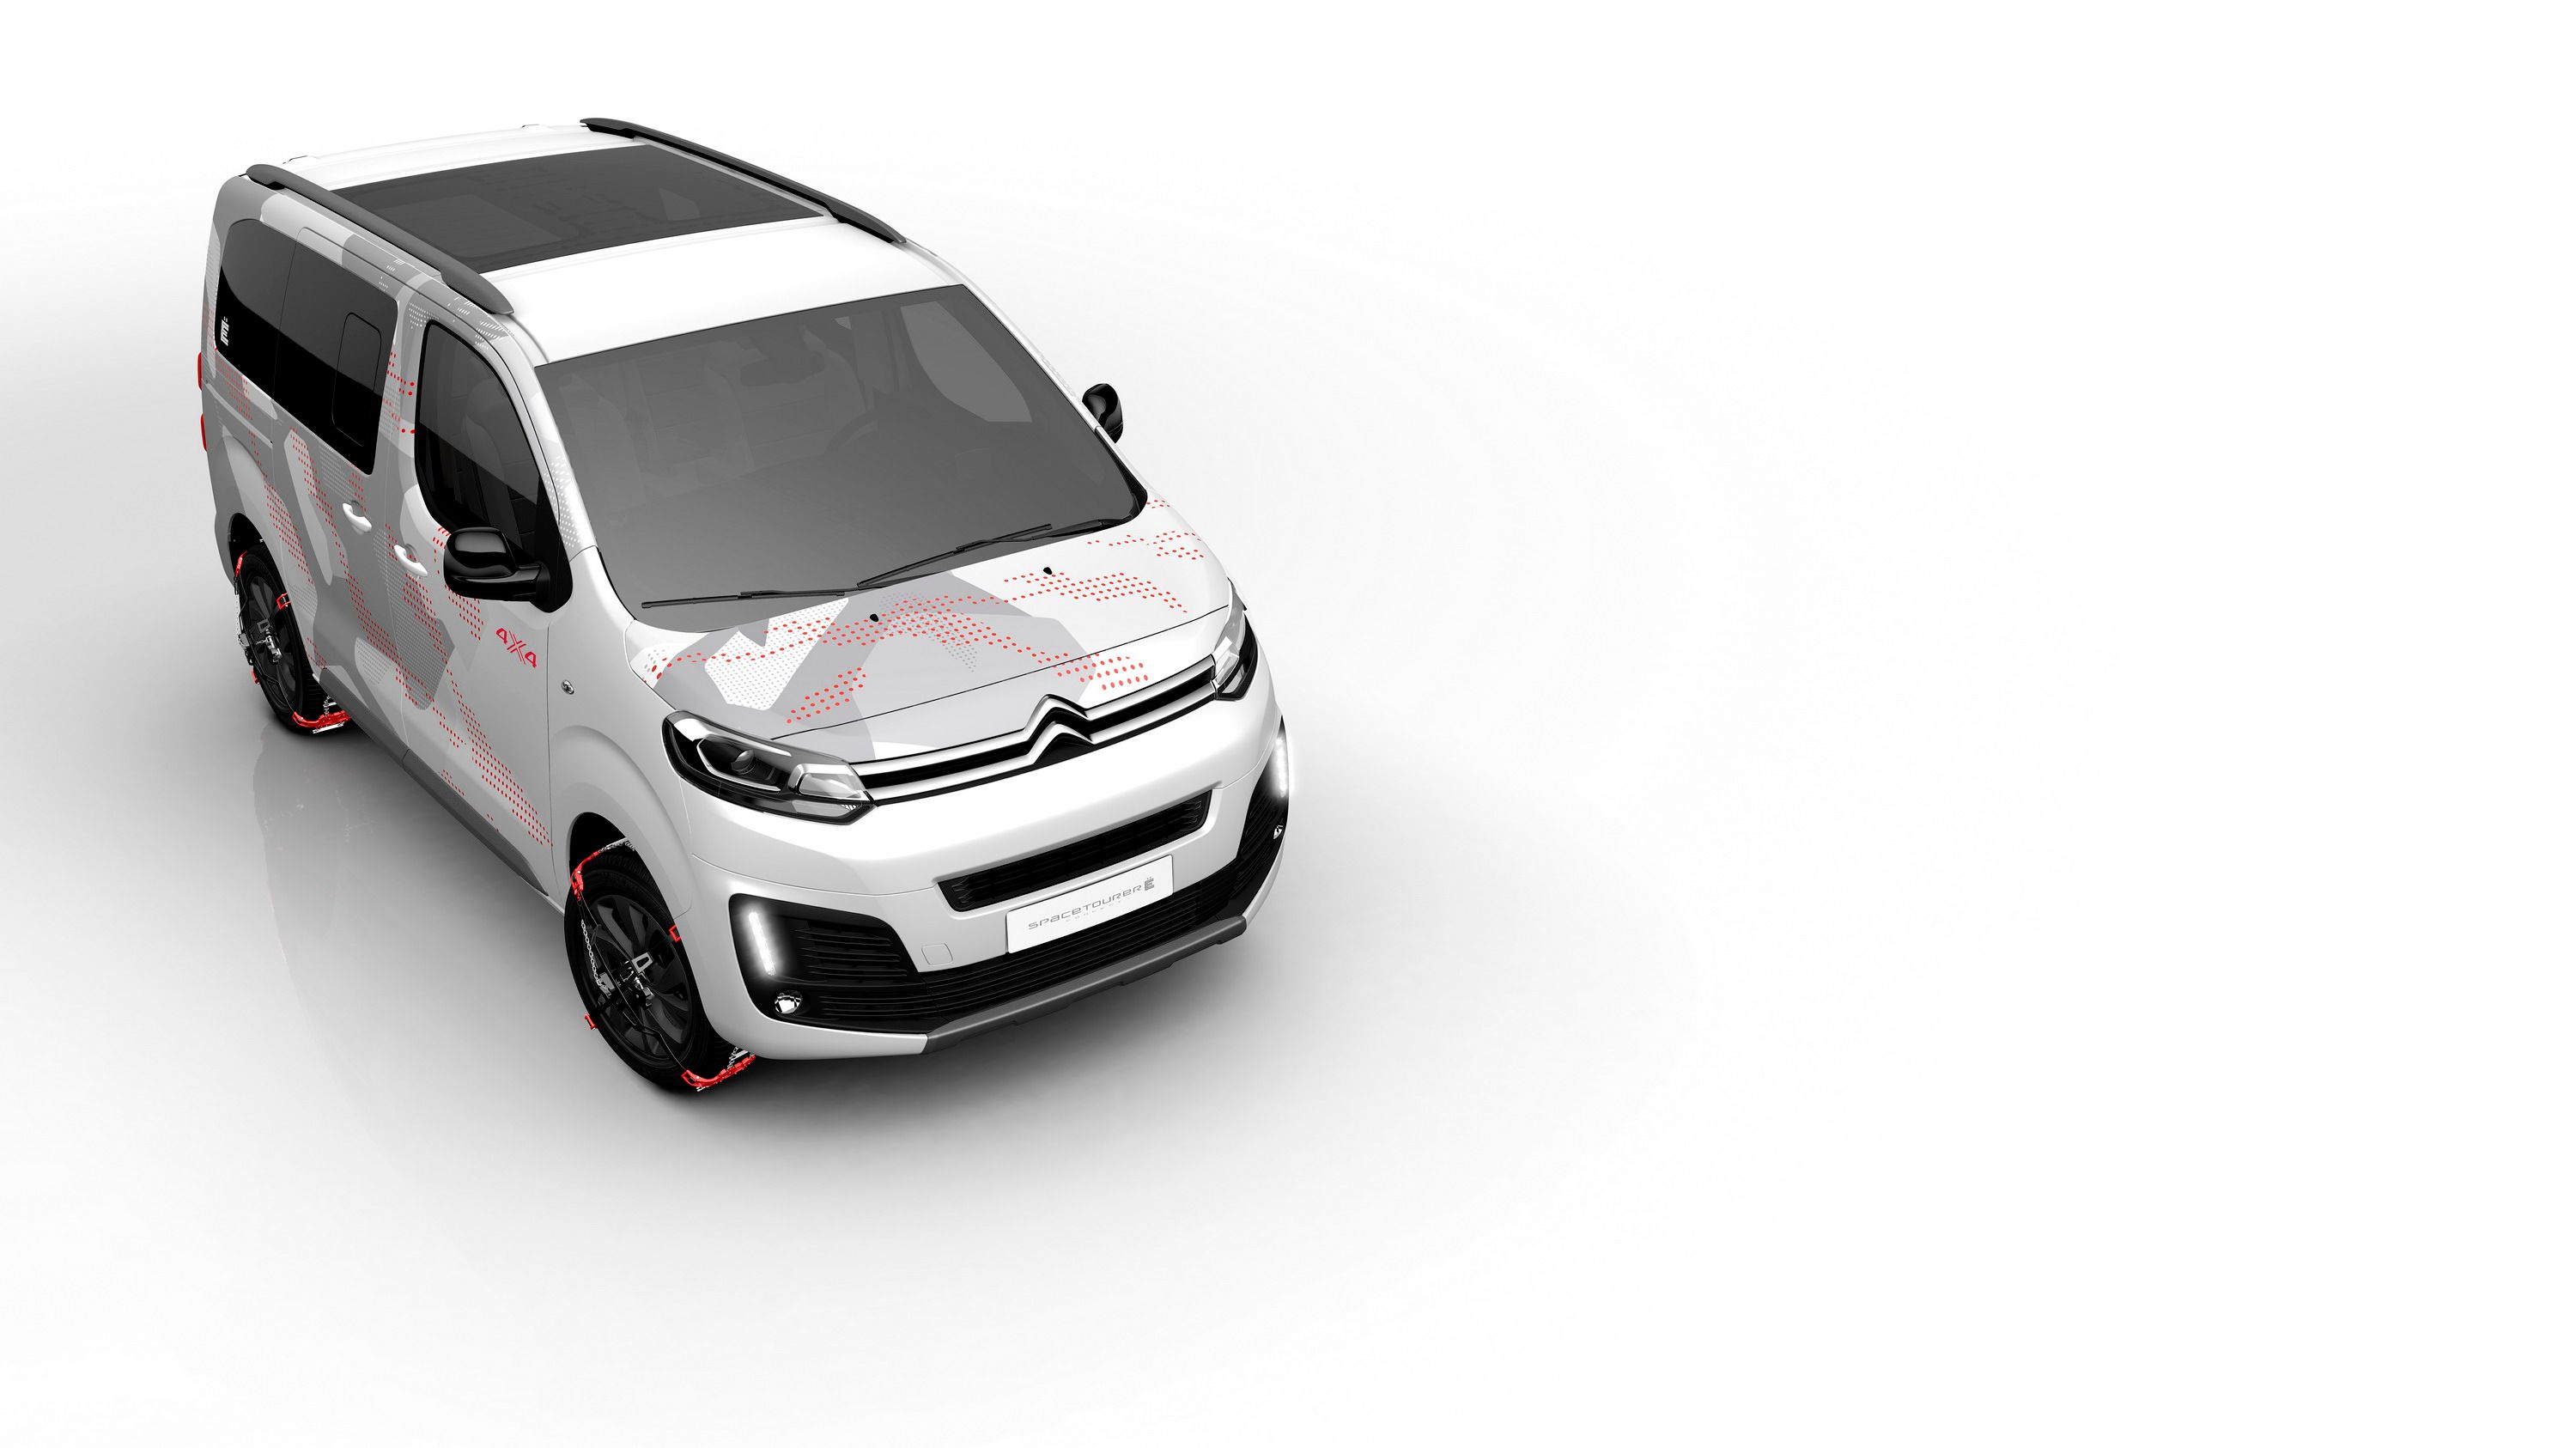 2017 Citroën SpaceTourer 4x4 Ë Concept